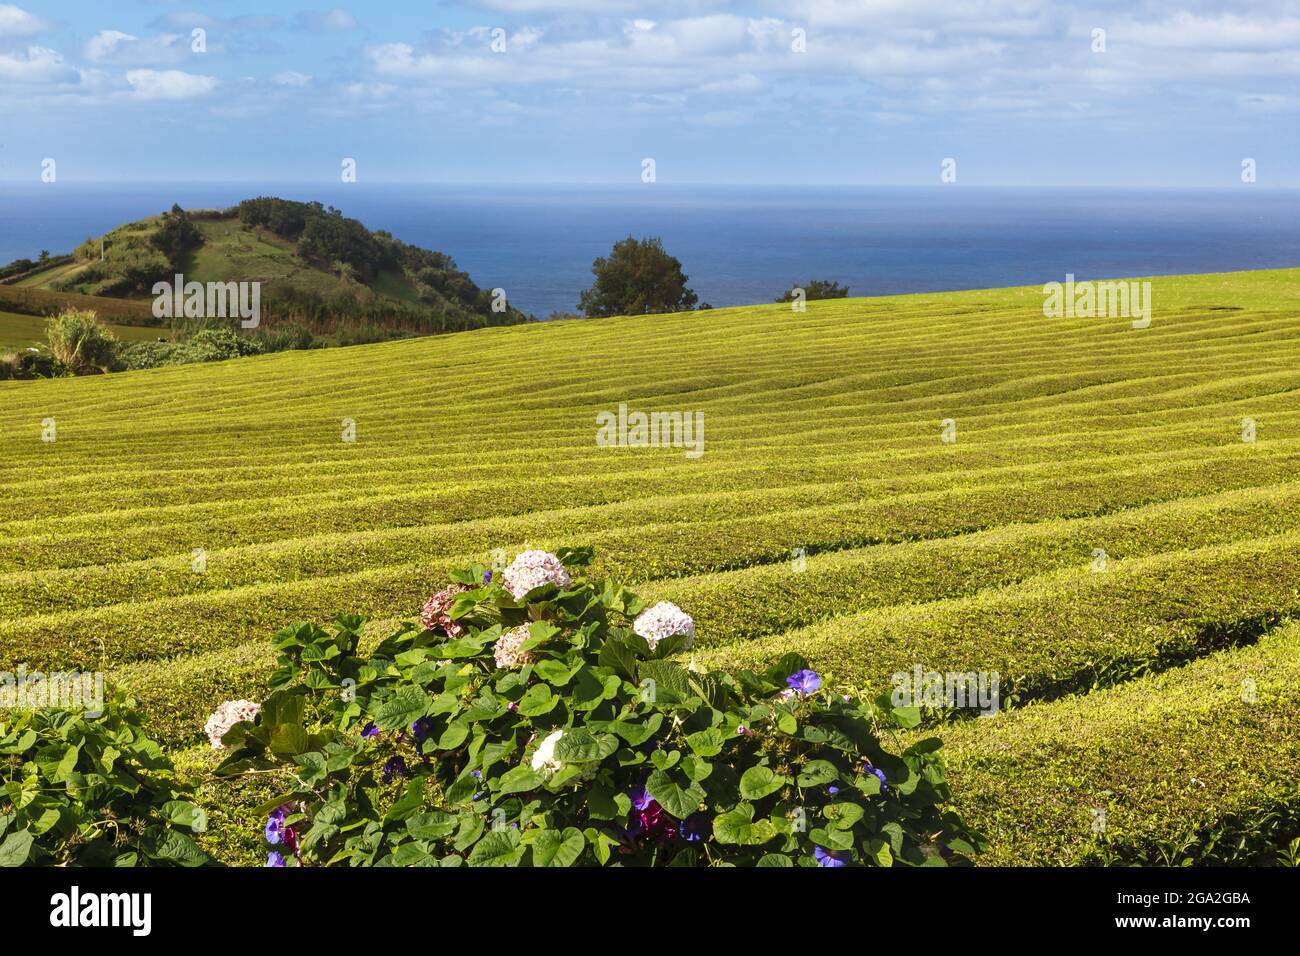 Cerca de las exuberantes y verdes plantas de té cubren los campos de la famosa Fábrica de Té de Gorreana a lo largo de la costa del Océano Atlántico Foto de stock